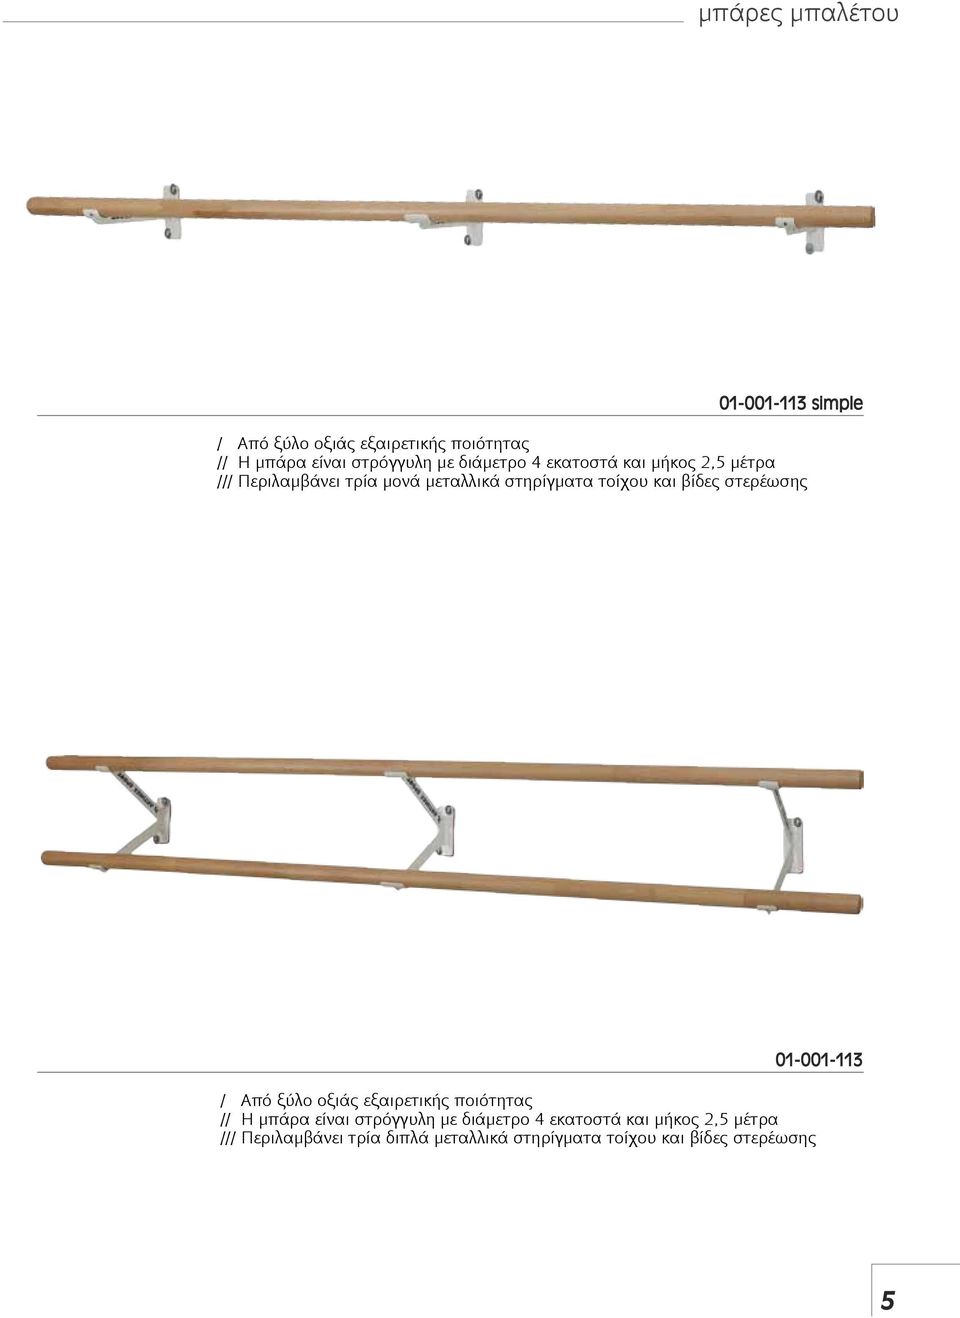 βίδες στερέωσης 01-001-113 / Από ξύλο οξιάς εξαιρετικής ποιότητας // Η μπάρα είναι στρόγγυλη με